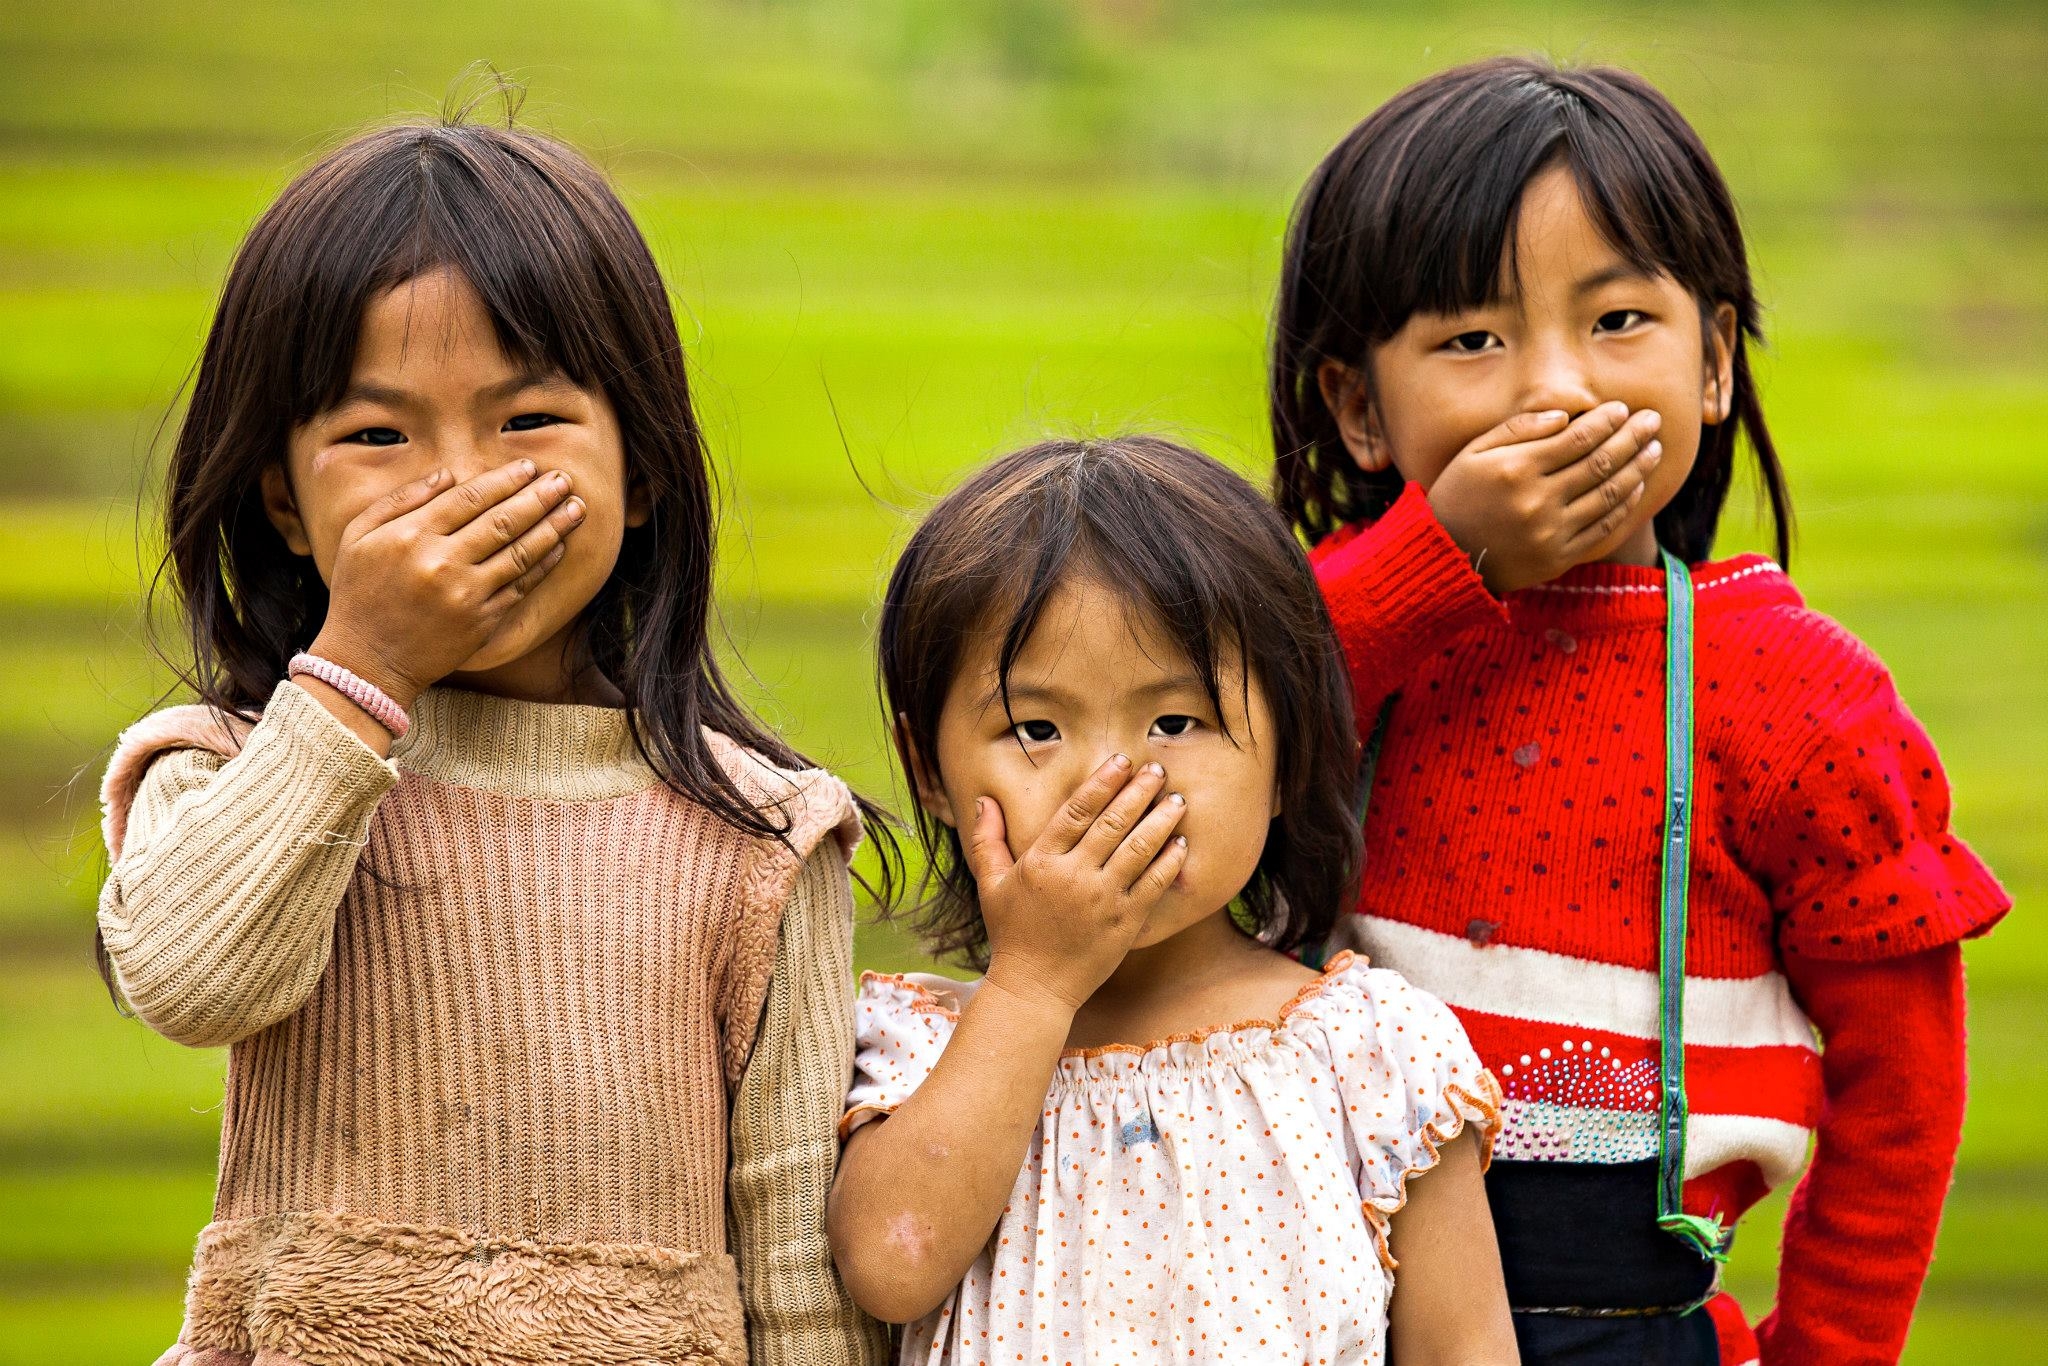 Ngắm Việt Nam tươi đẹp qua ống kính của nhiếp ảnh gia người Pháp